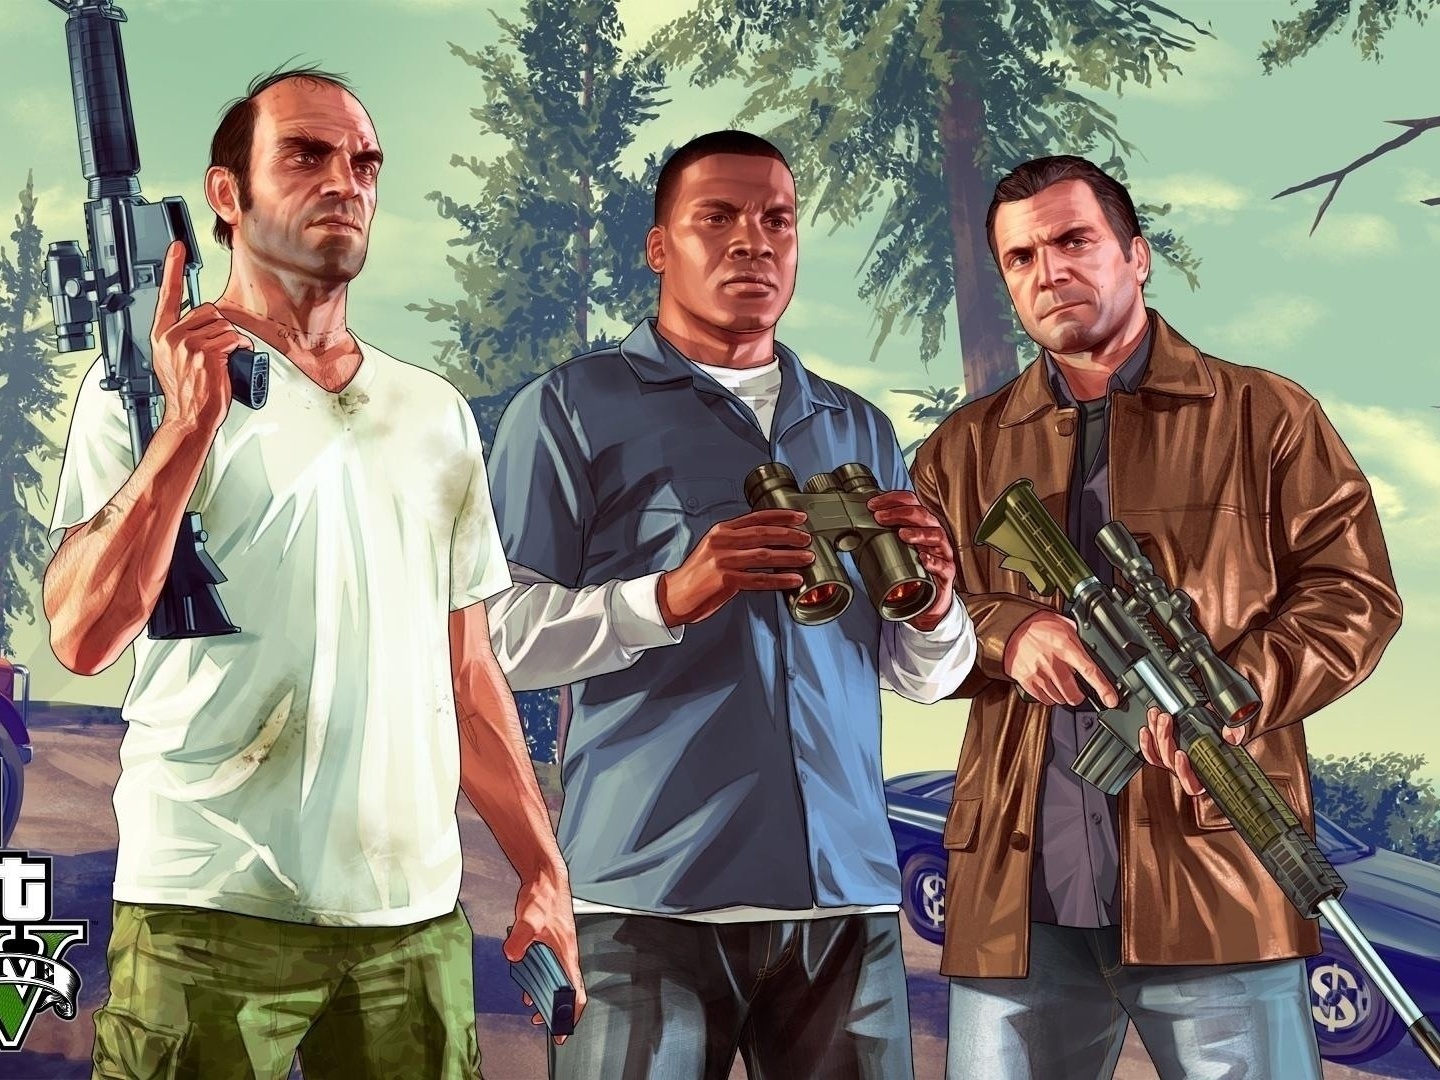 Grand Theft Auto V - Gta V - Gta 5 Xbox 360 na Americanas Empresas